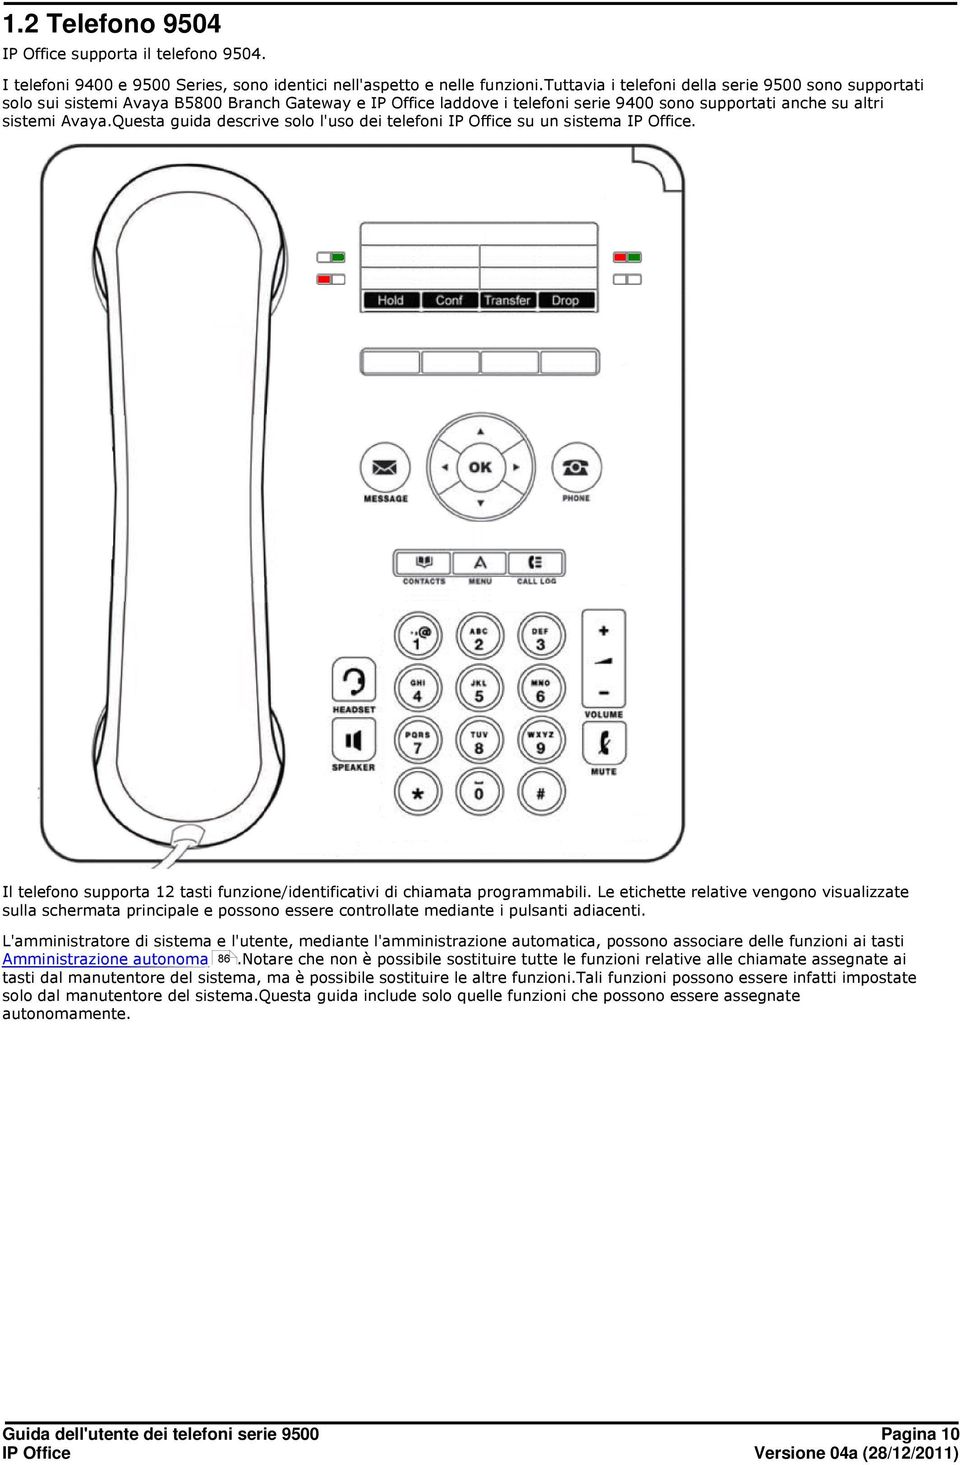 Questa guida descrive solo l'uso dei telefoni su un sistema. Il telefono supporta 12 tasti funzione/identificativi di chiamata programmabili.